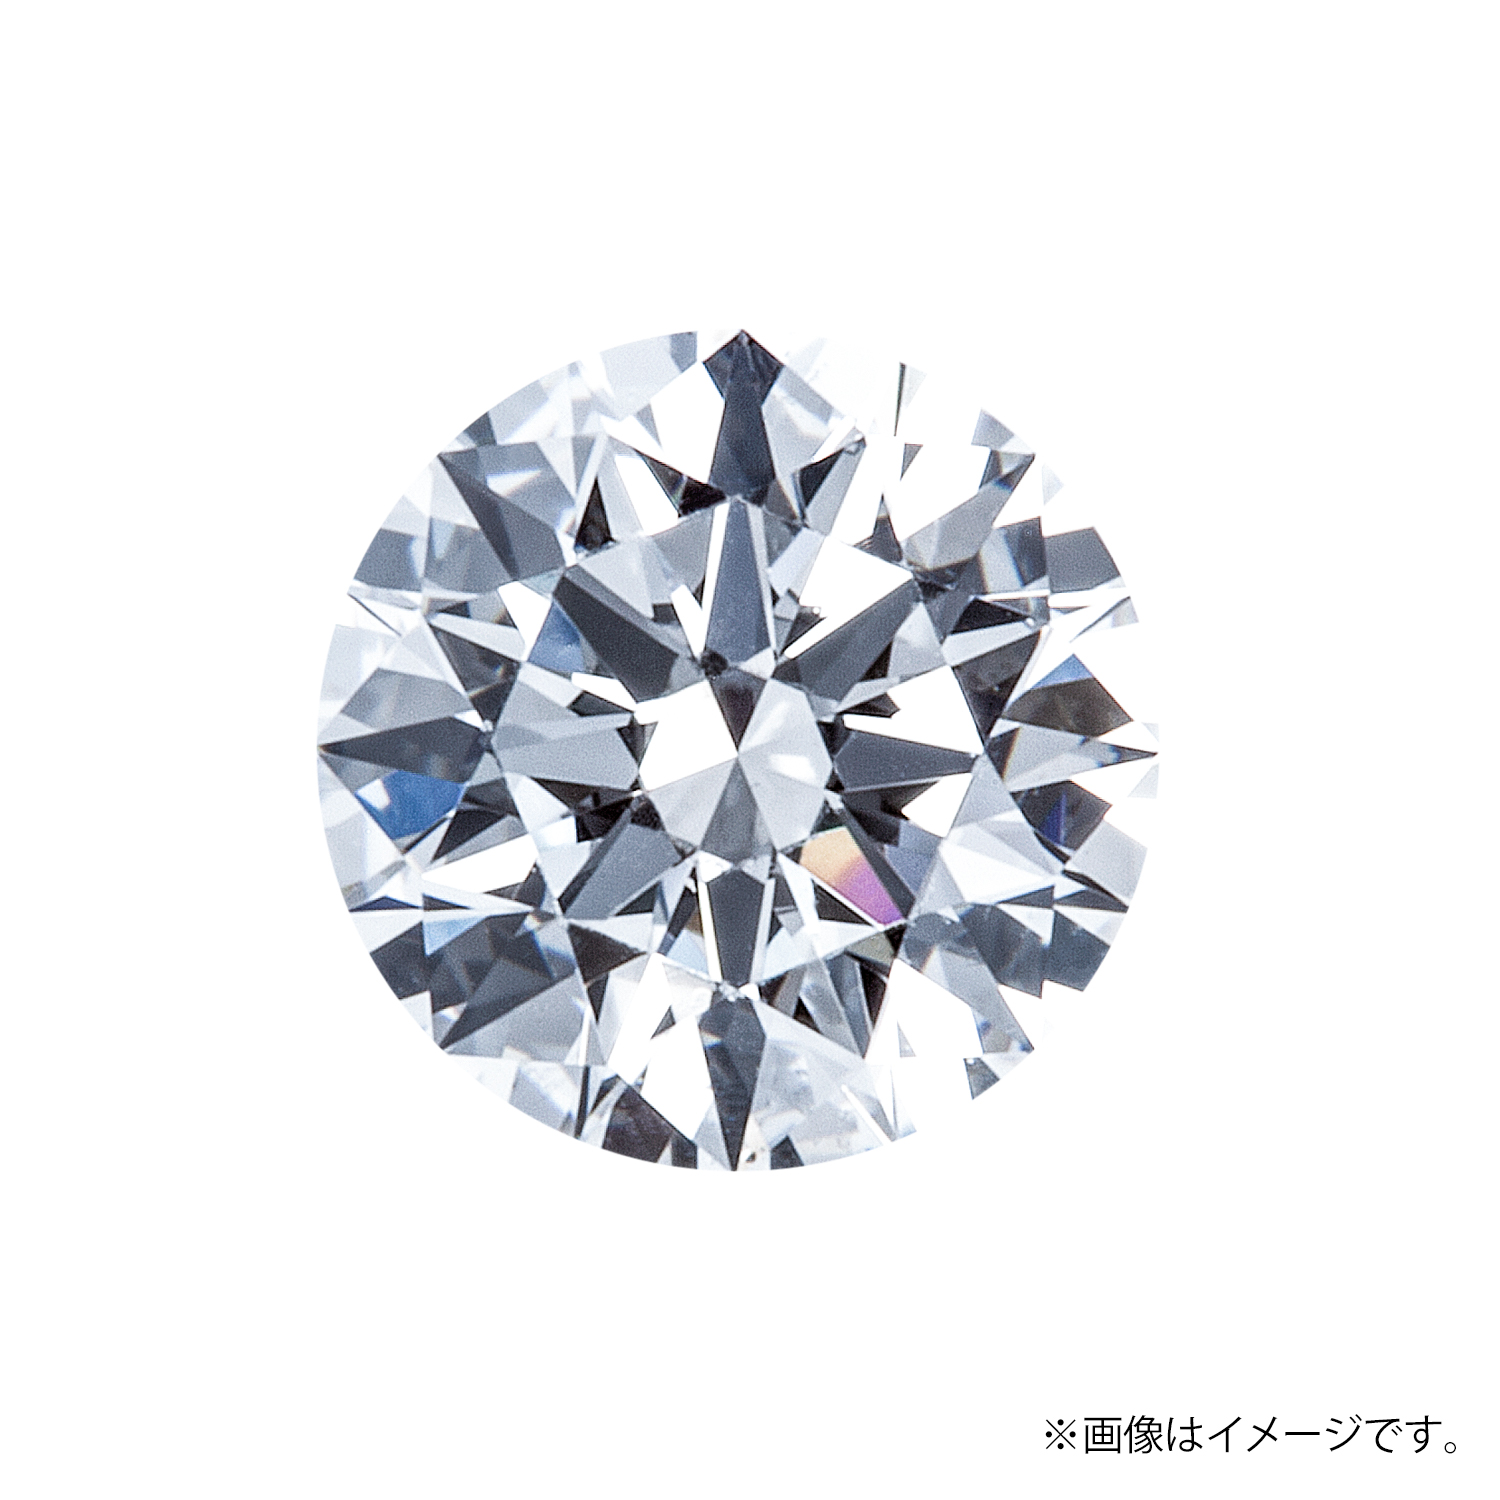 0.320ct Round ダイヤモンド / D / IF / 3EX H&C